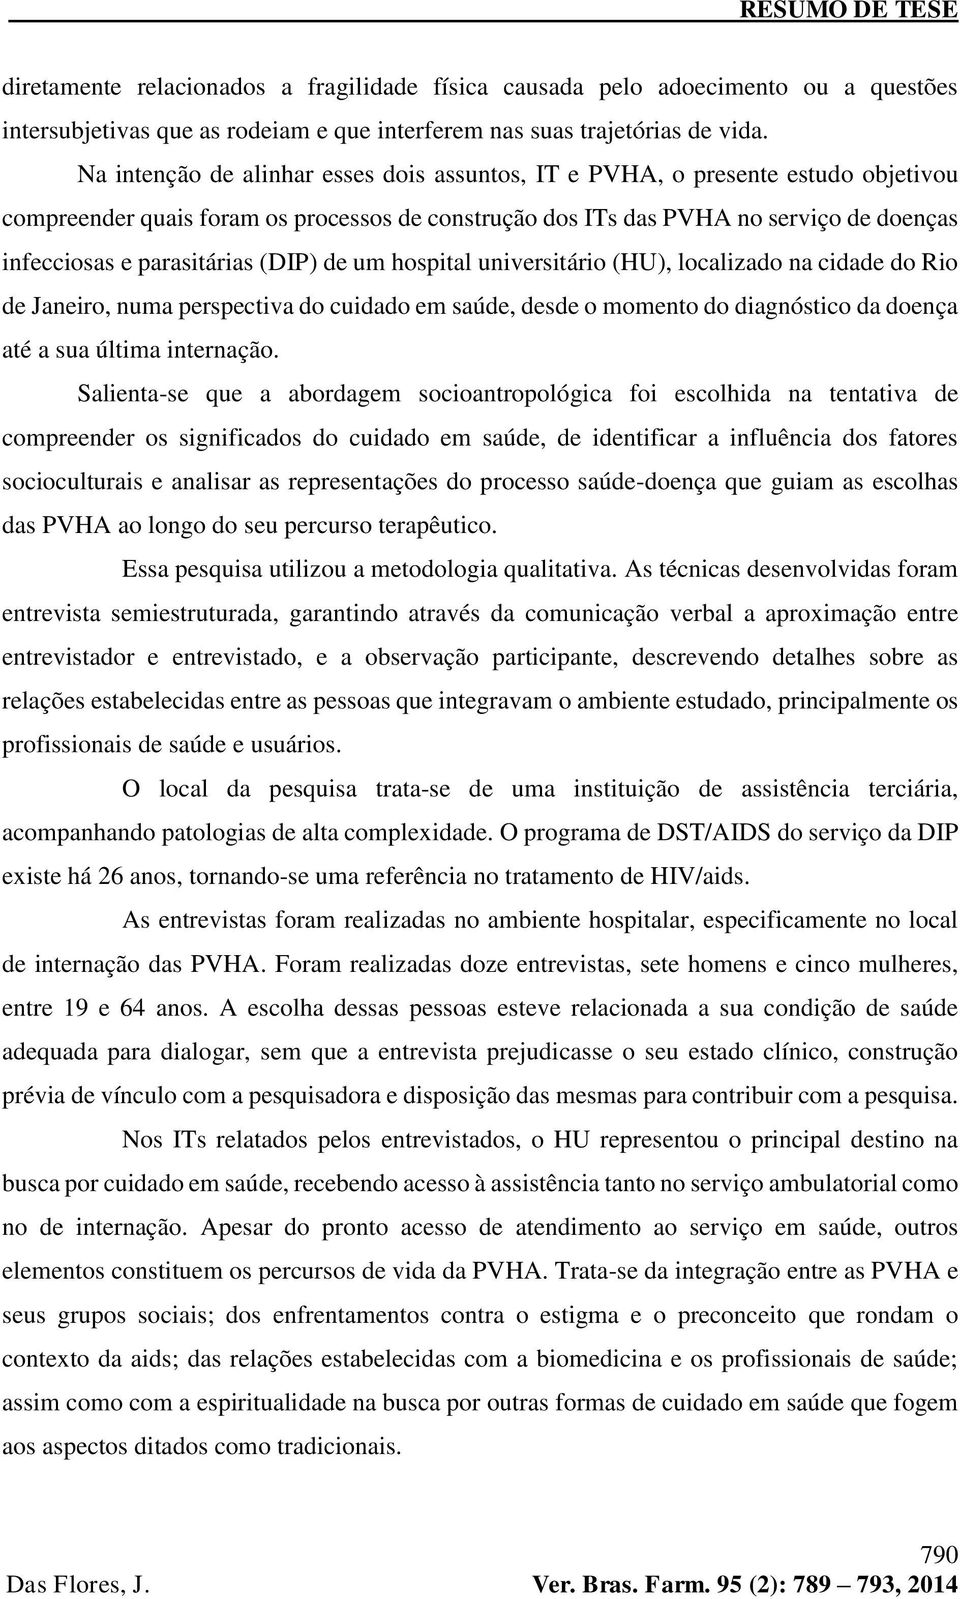 (DIP) de um hospital universitário (HU), localizado na cidade do Rio de Janeiro, numa perspectiva do cuidado em saúde, desde o momento do diagnóstico da doença até a sua última internação.